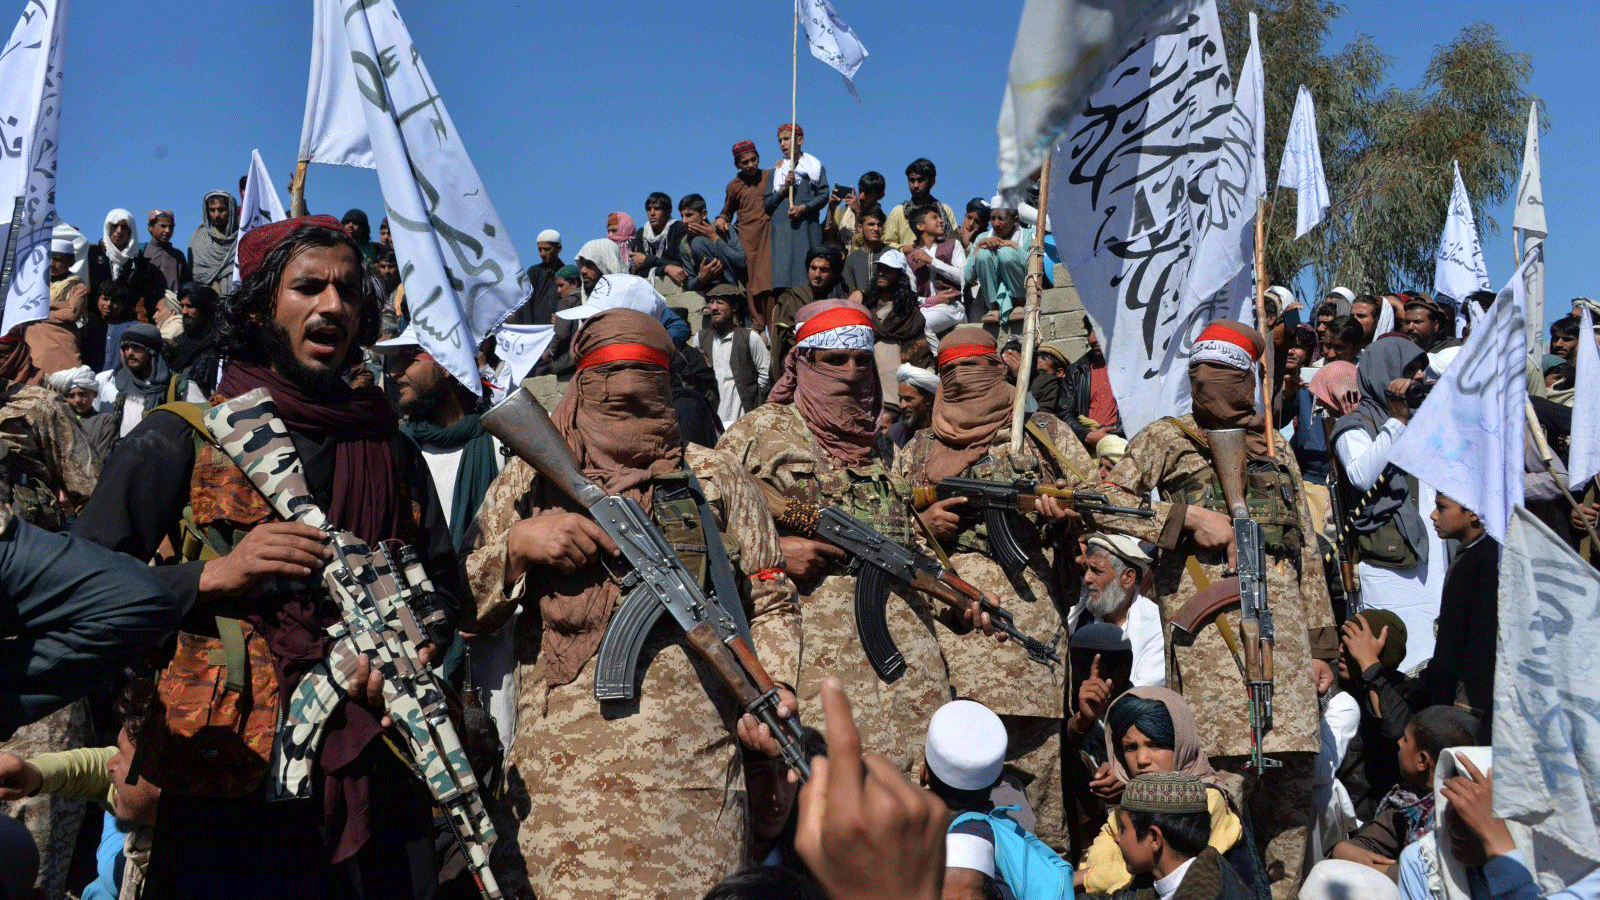 مقاتلو طالبان الأفغان والقرويون يحضرون تجمعًا للاحتفال باتفاق السلام وانتصارهم في الصراع الأفغاني، في منطقة ألينجار في ولاية لغمان، أفغانستان. 2 آذار/مارس 2020